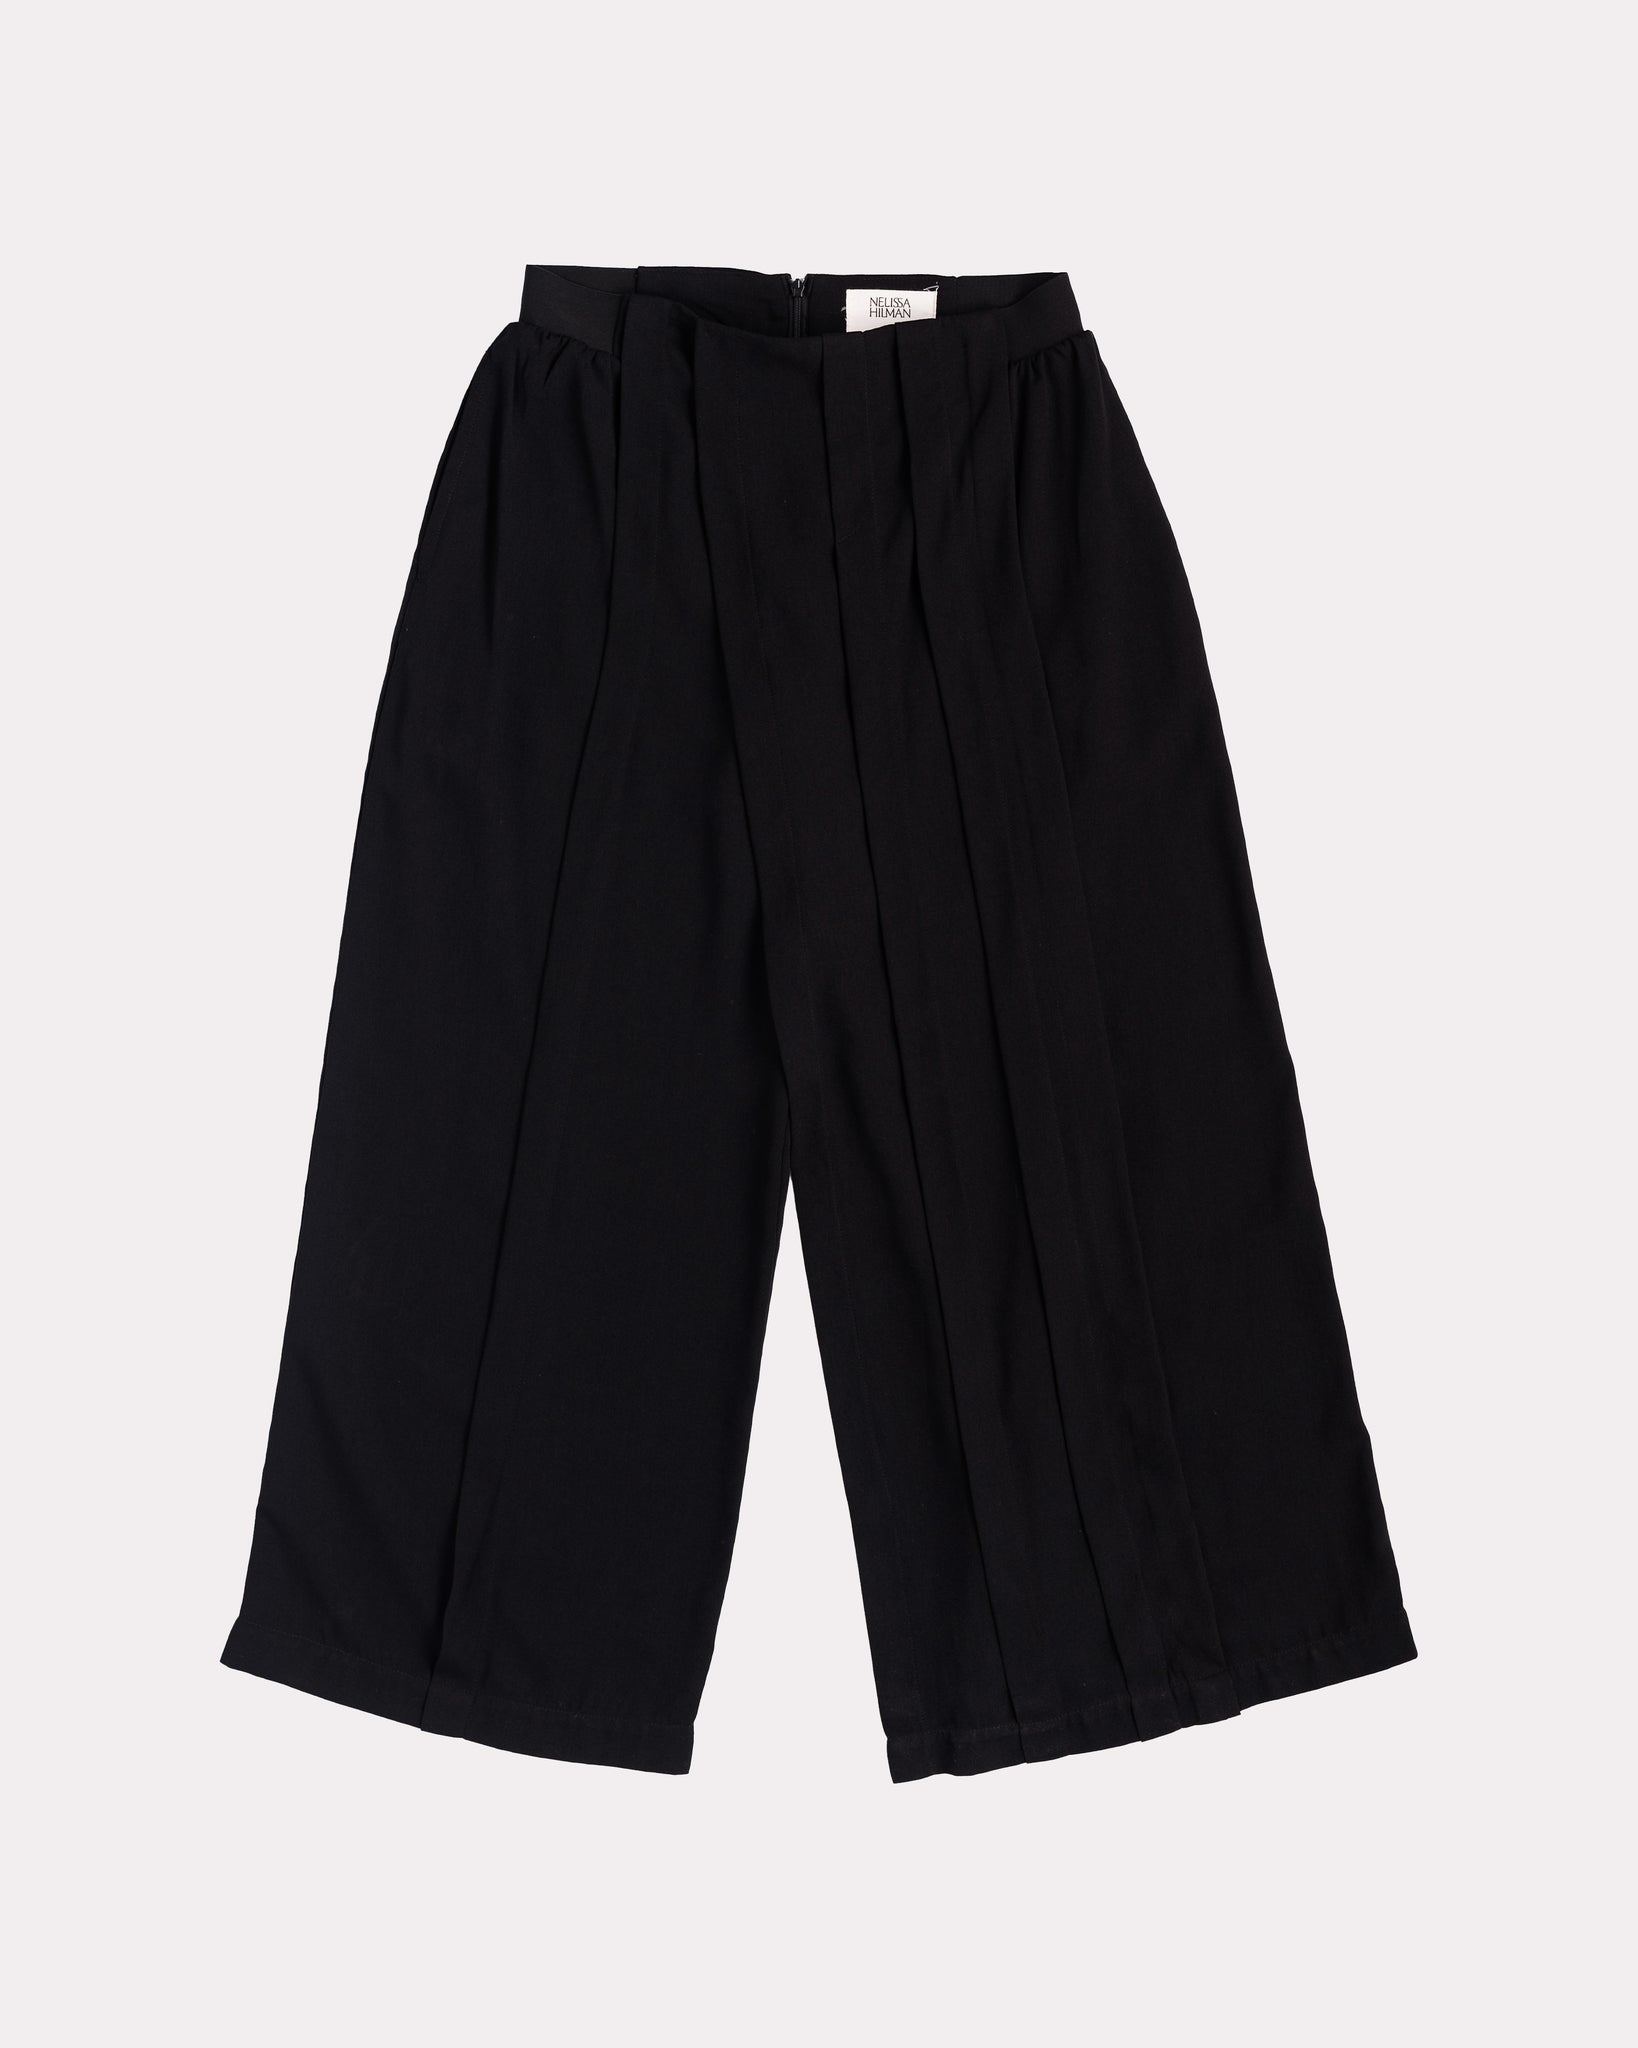 Pleat-Paneled Pants (Black)